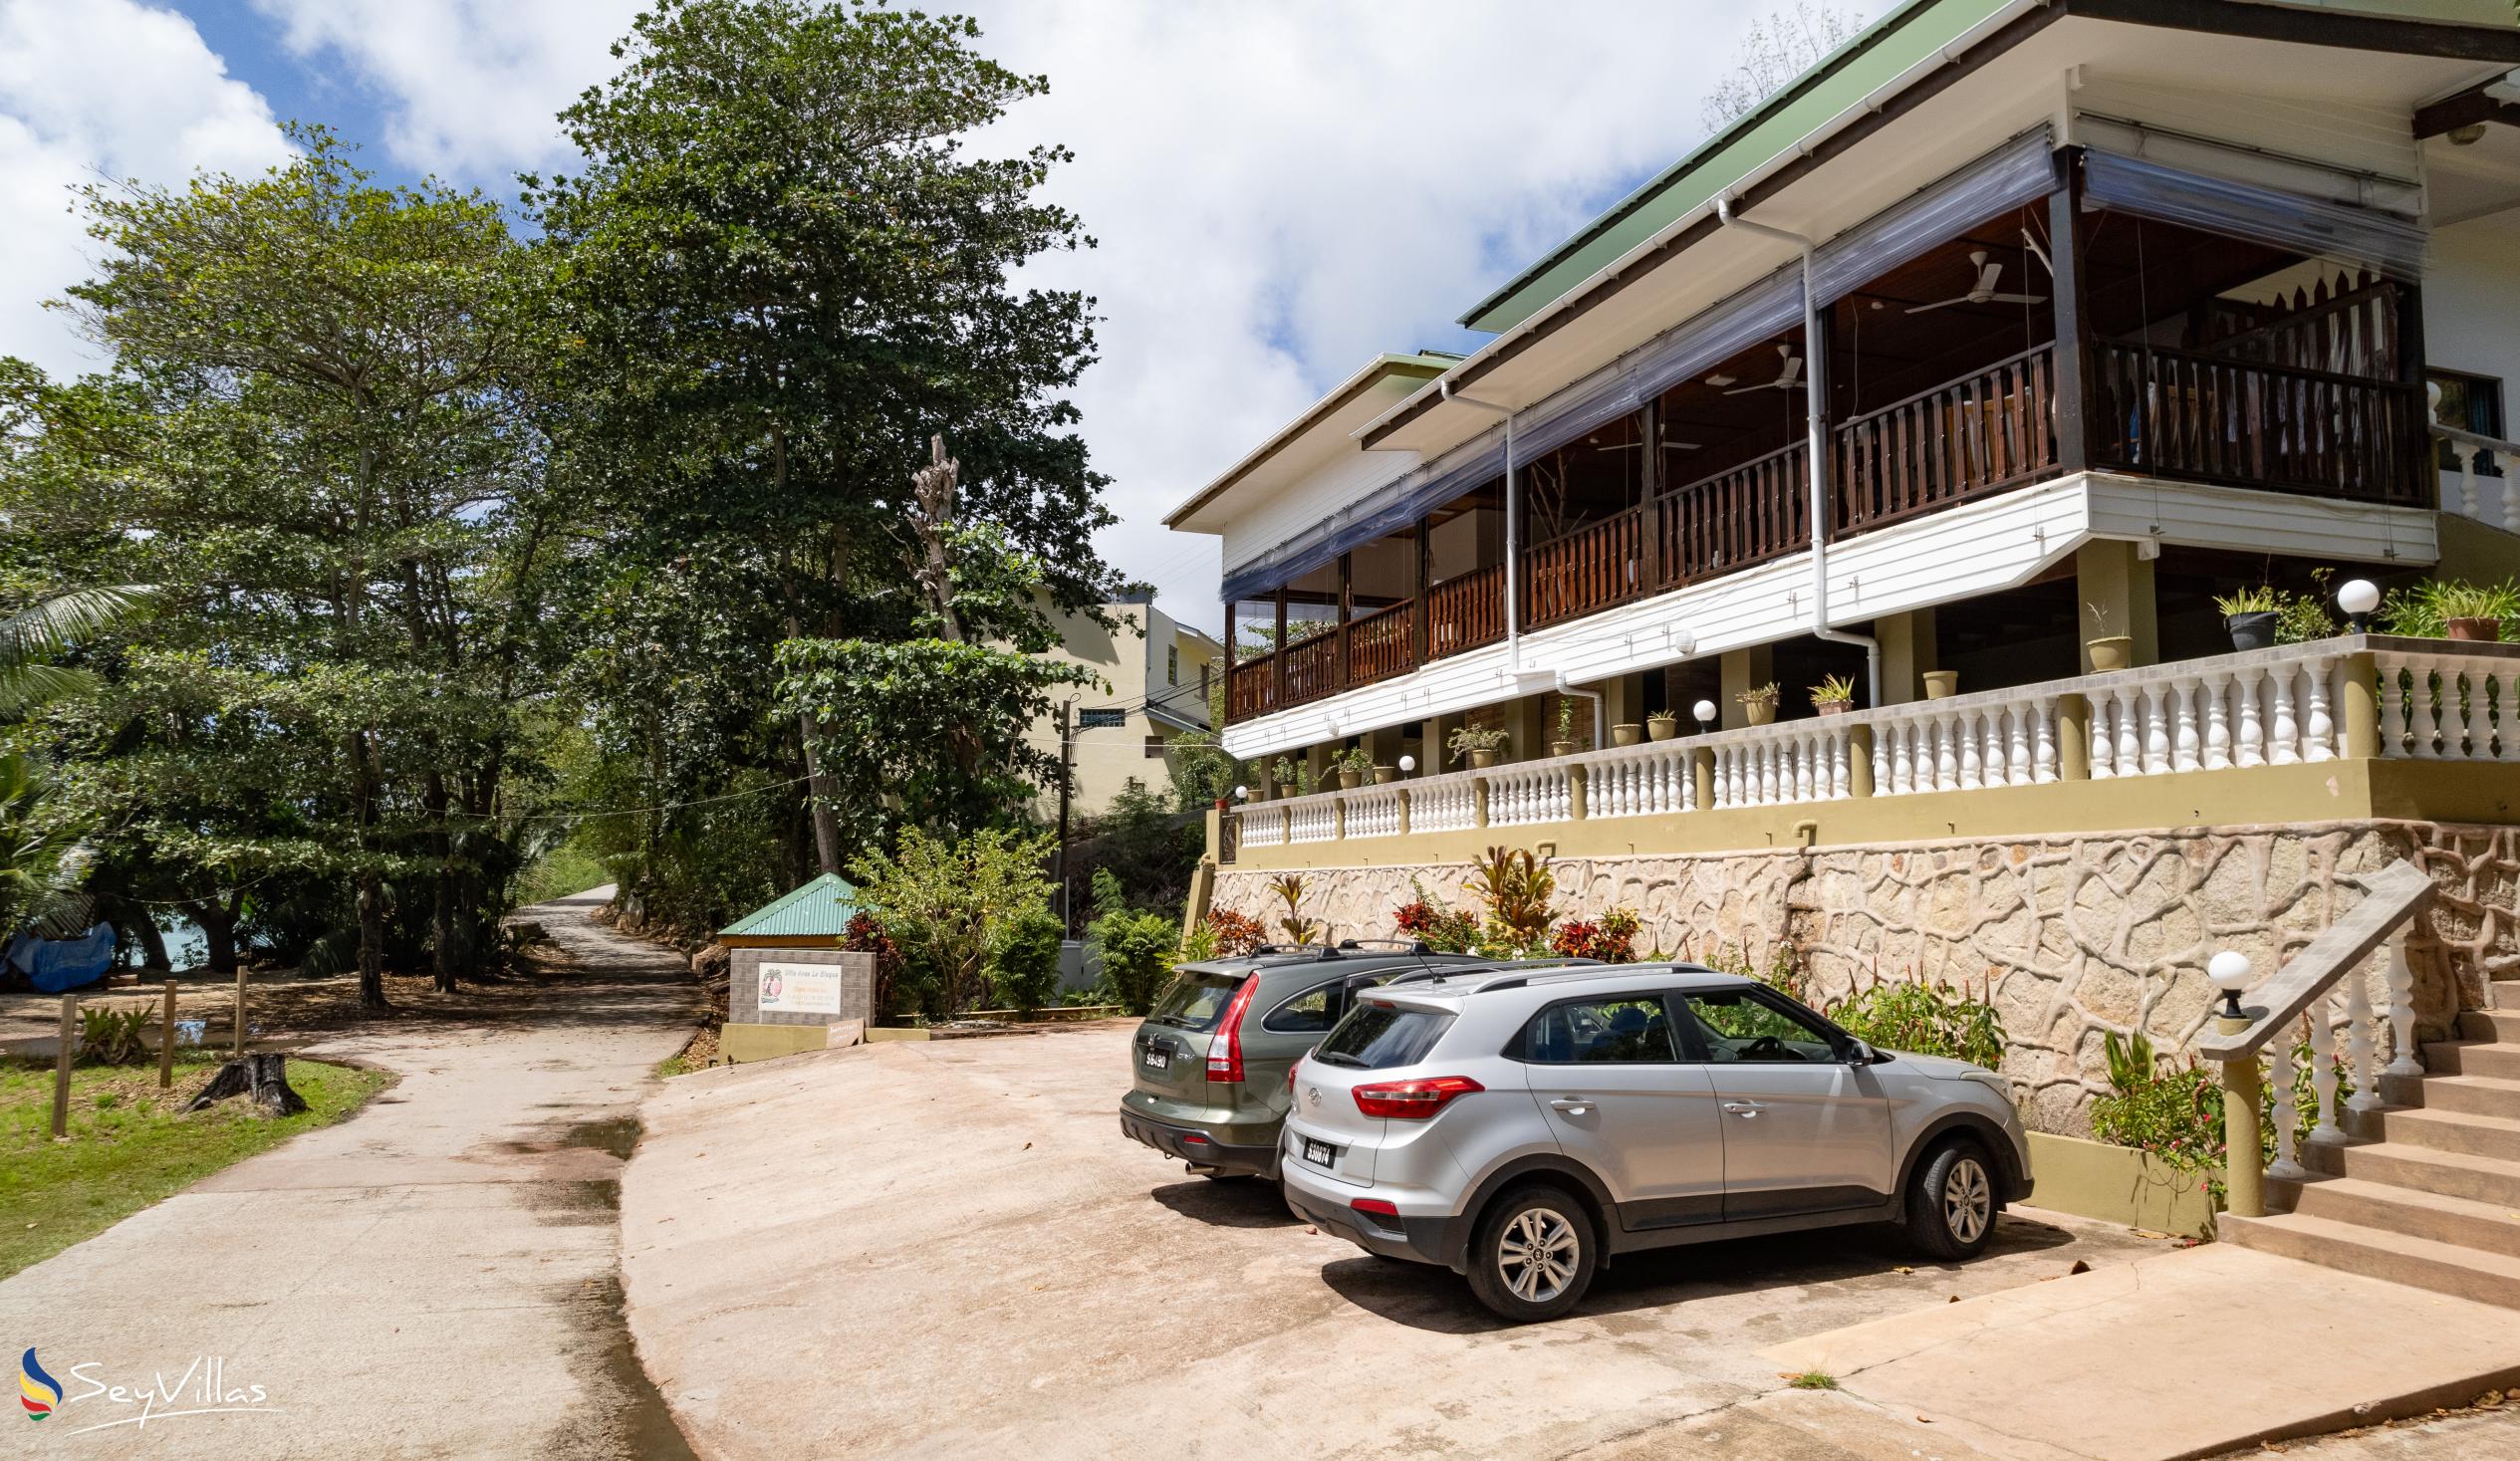 Foto 13: Villa Anse La Blague - Aussenbereich - Praslin (Seychellen)